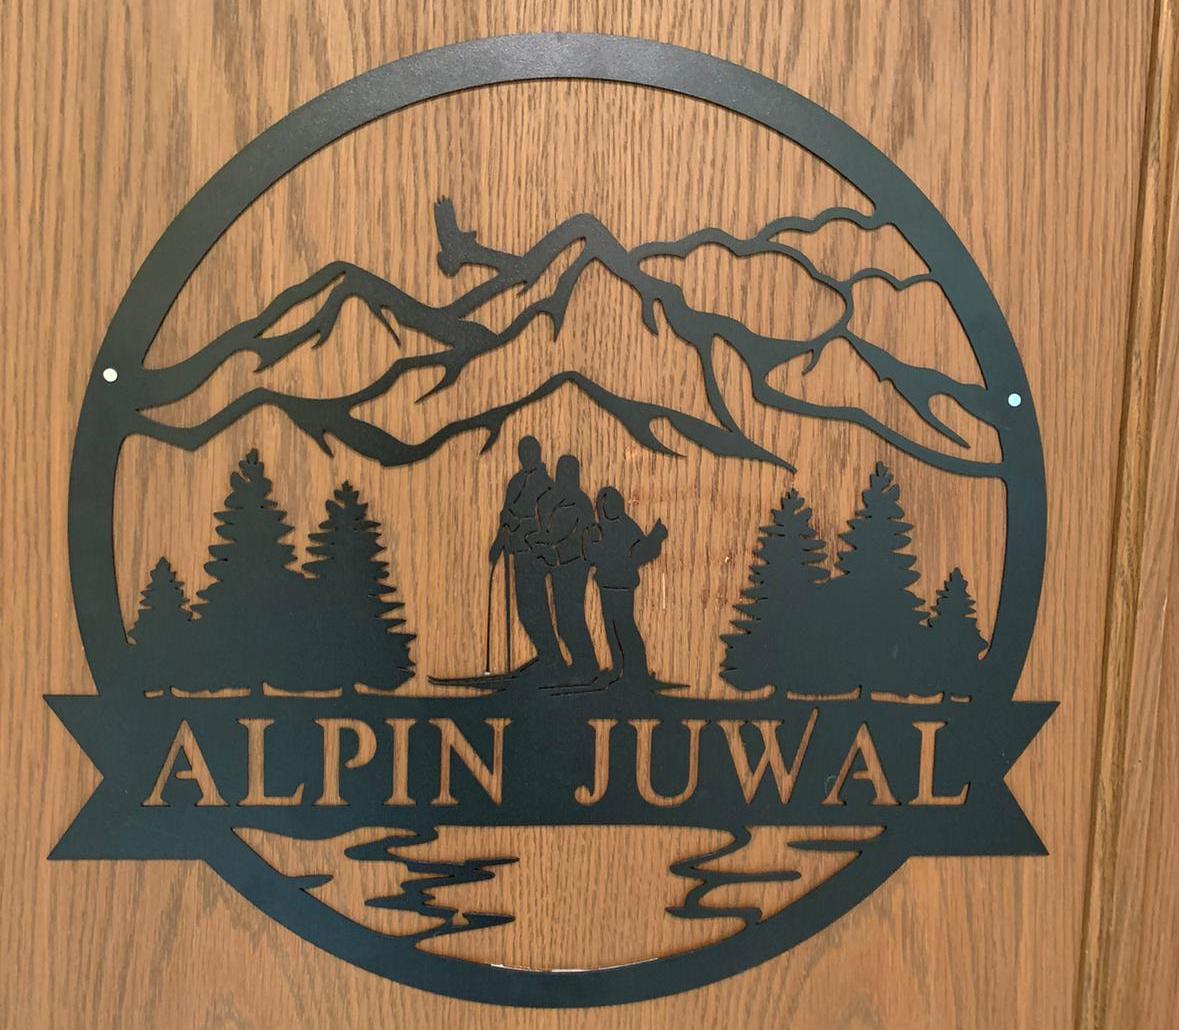 Alpin Juwal